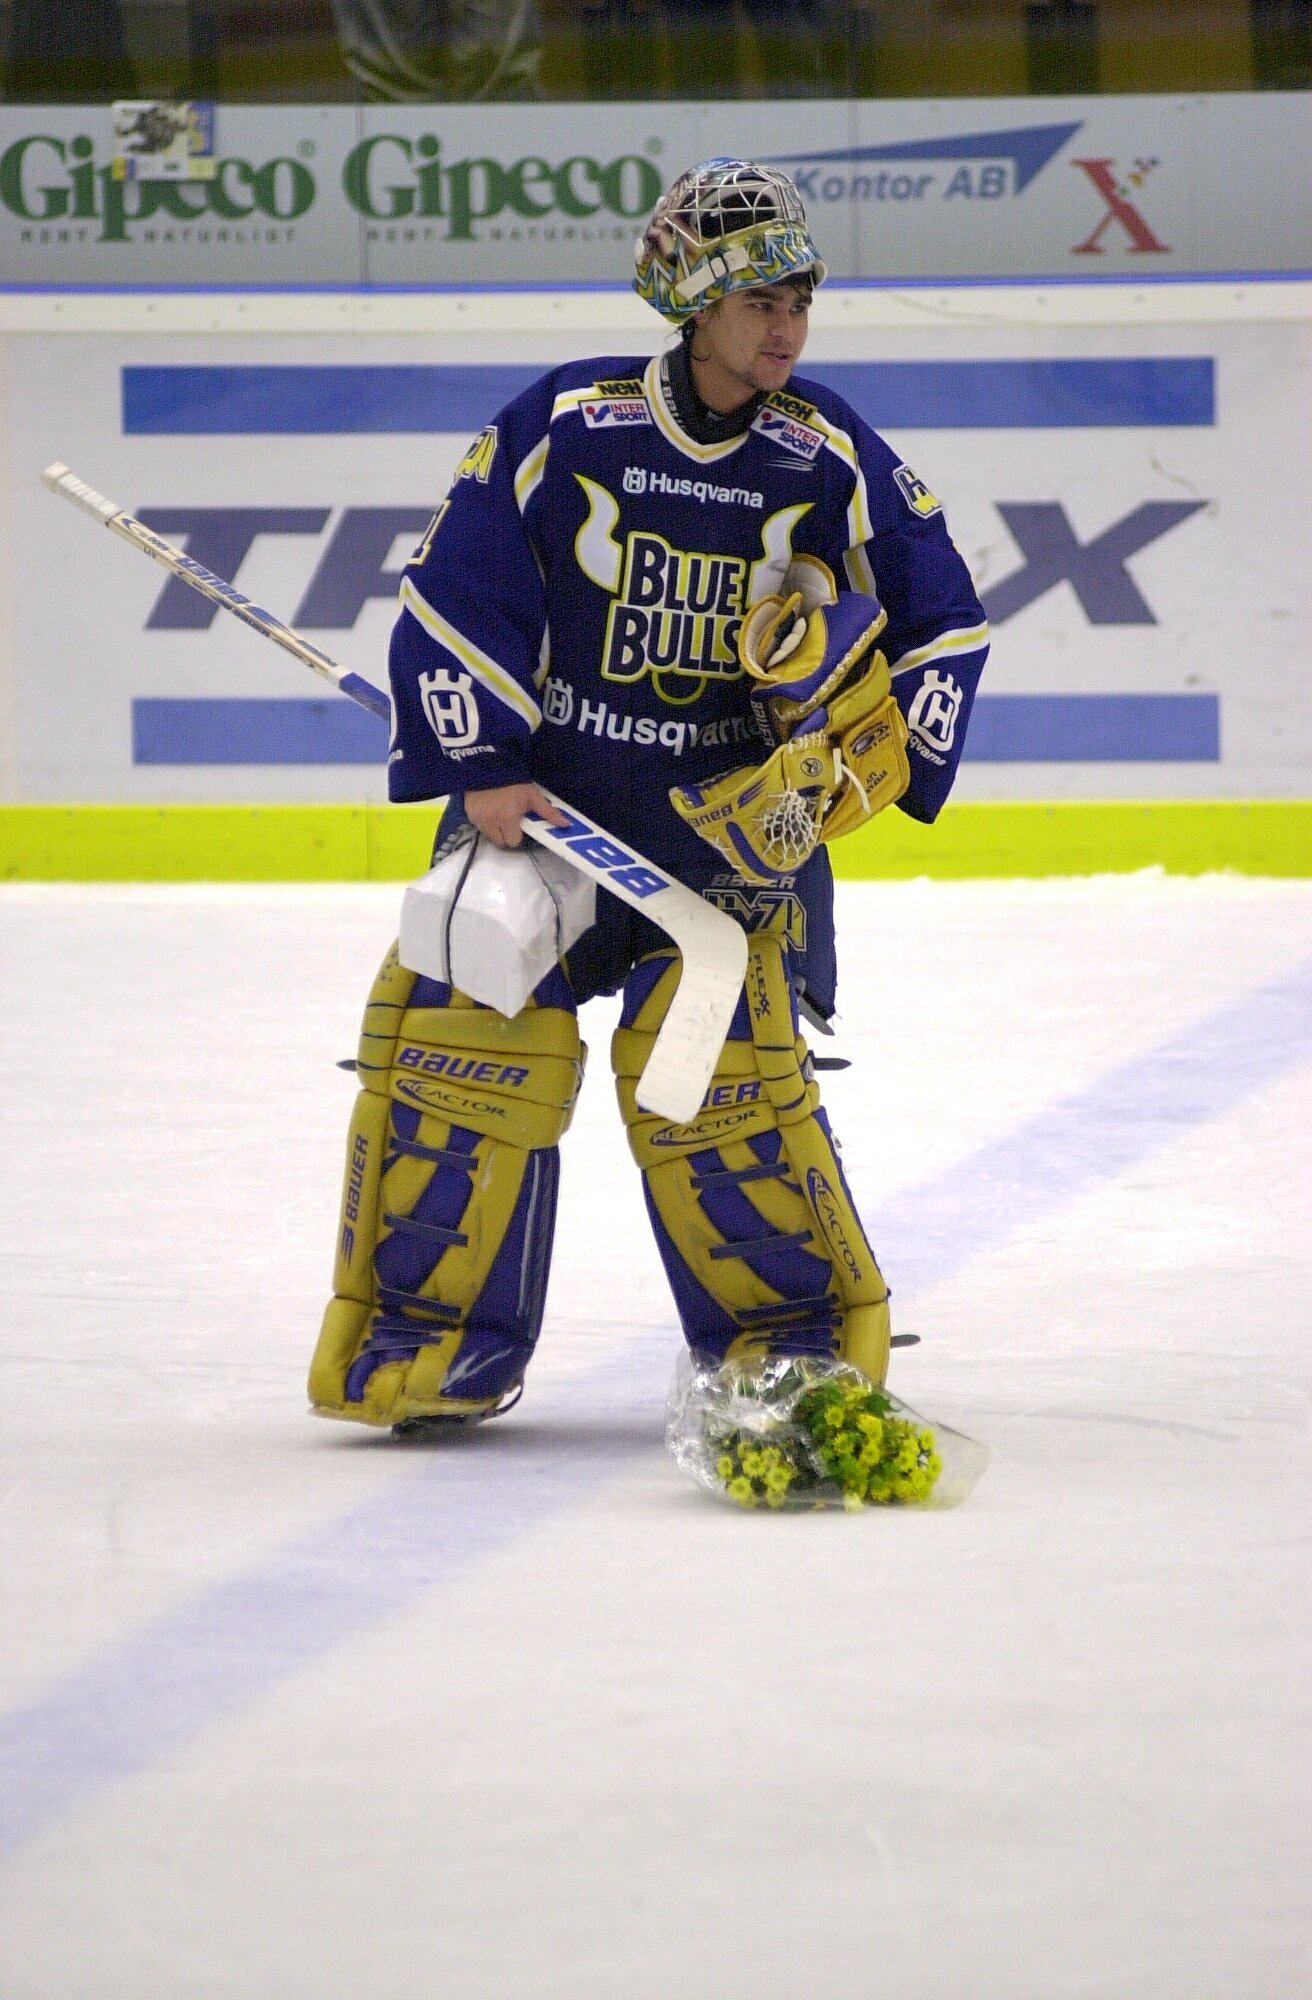 Här är bilderna från Stefan Livs karriär som innehöll SM-guld, VM-guld och ett OS-guld 2006 i Turin.